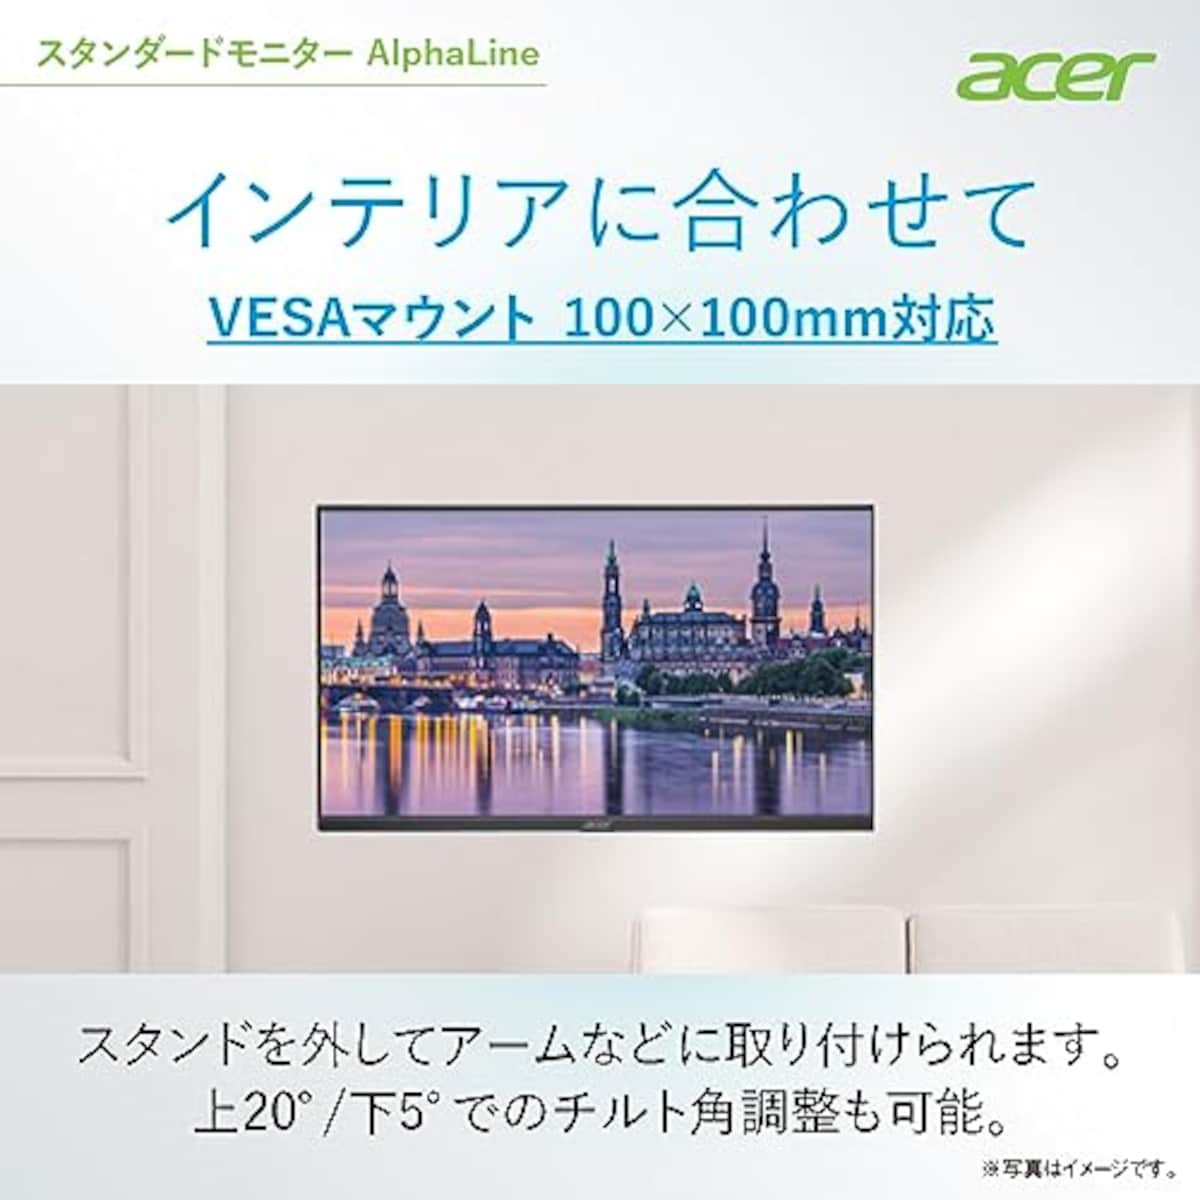  【Amazon.co.jp限定】日本エイサー Acer スタンダードモニター 27インチ IPS フルHD 100Hz 1ms スピーカー・ヘッドホン端子搭載 HDMI1.4 AMD FreeSync EK271Ebmix画像6 